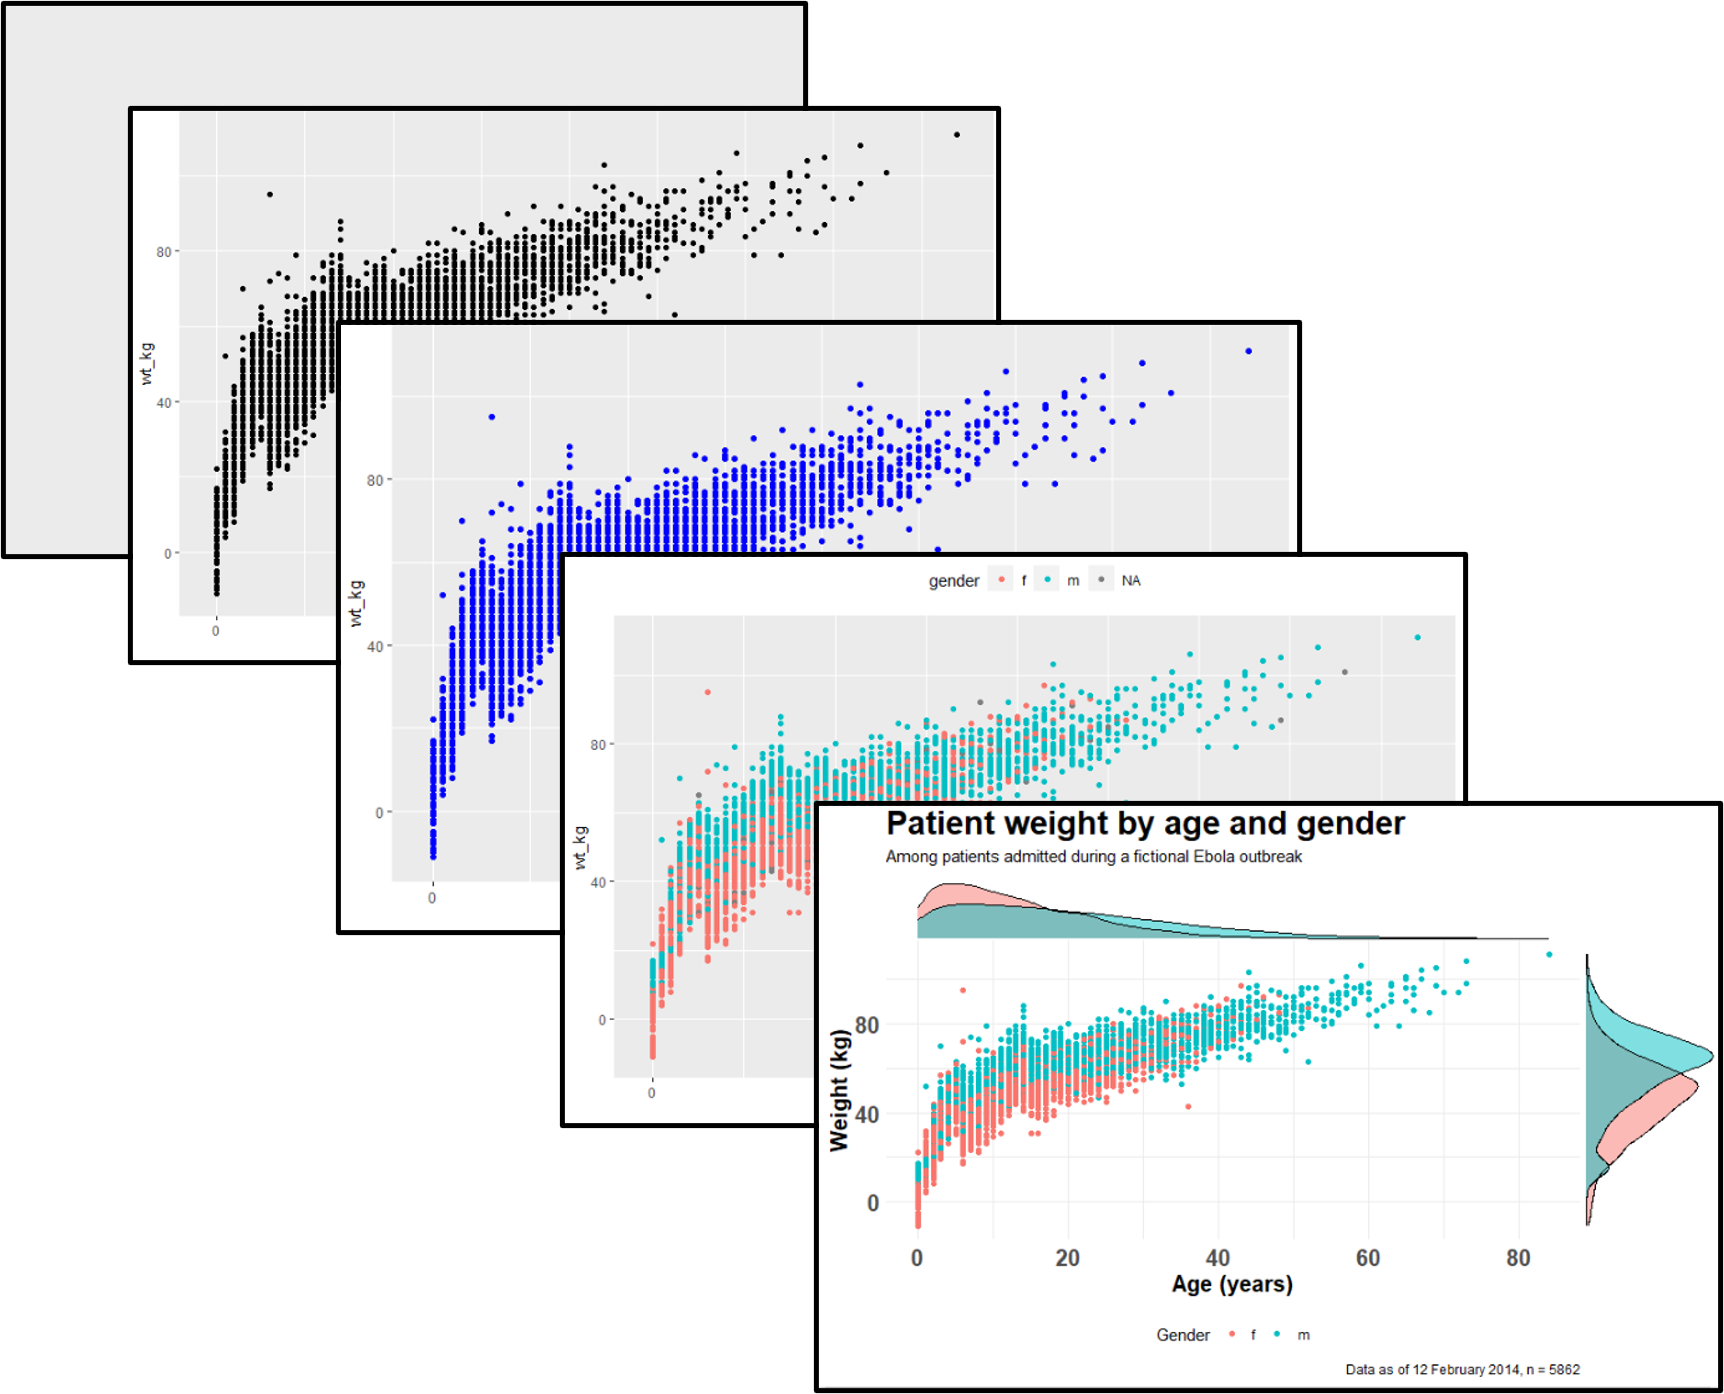 ggplot - Bạn muốn tạo ra những biểu đồ tuyệt đẹp và dễ đọc? Hãy thử nghiệm ggplot - gói phần mềm thống kê miễn phí. Cùng xem hình ảnh liên quan đến ggplot để hiểu thêm tính năng thú vị này!